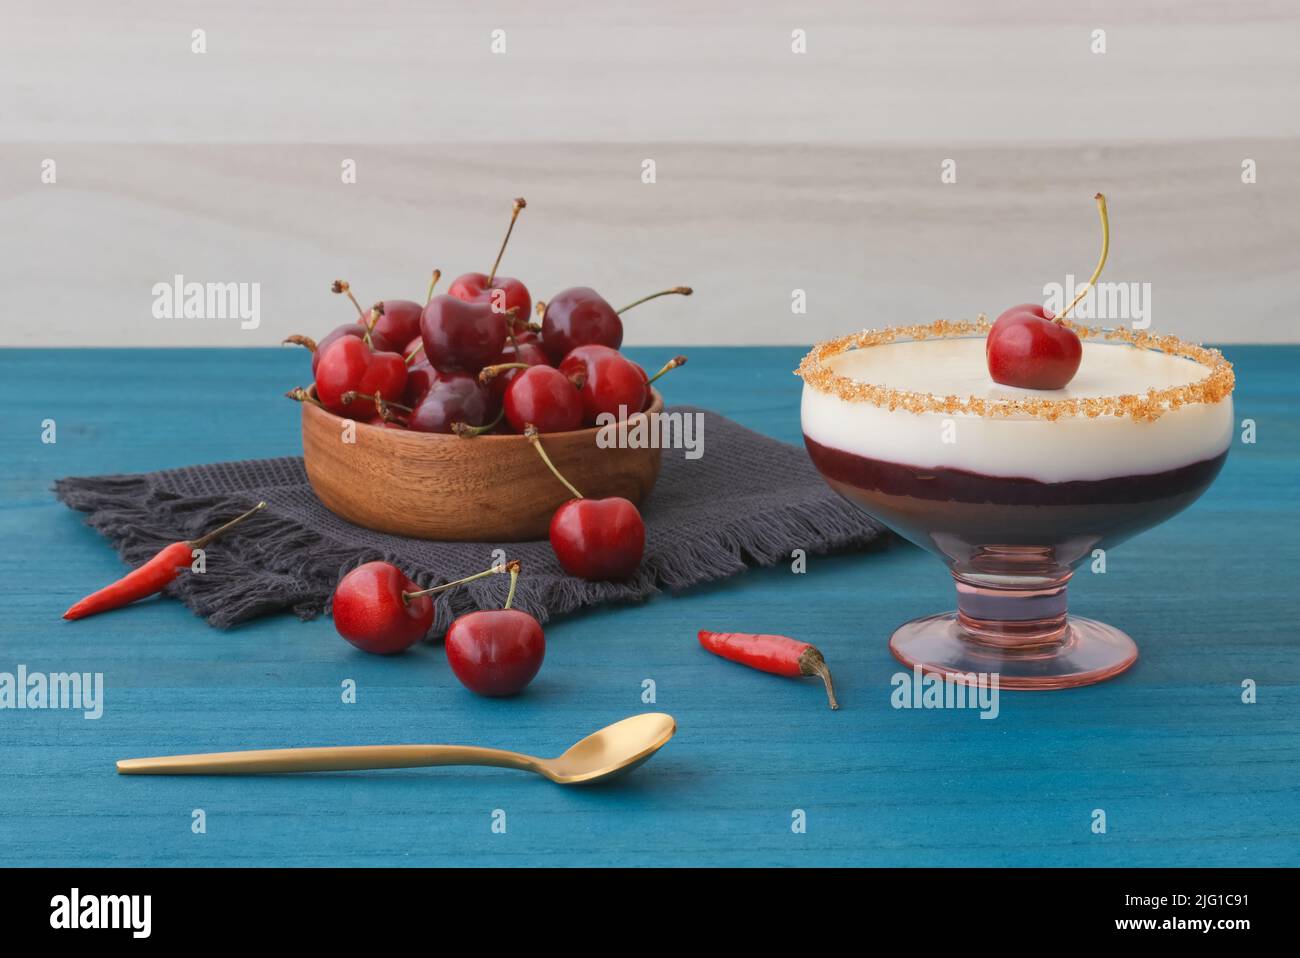 Mousse al cioccolato bianco e scuro o panna cotta con gelatina di ciliegia in un bicchiere con ciotola di legno di ciliegie mature su tavola di legno blu. Vista ad angolo alto, n. Foto Stock